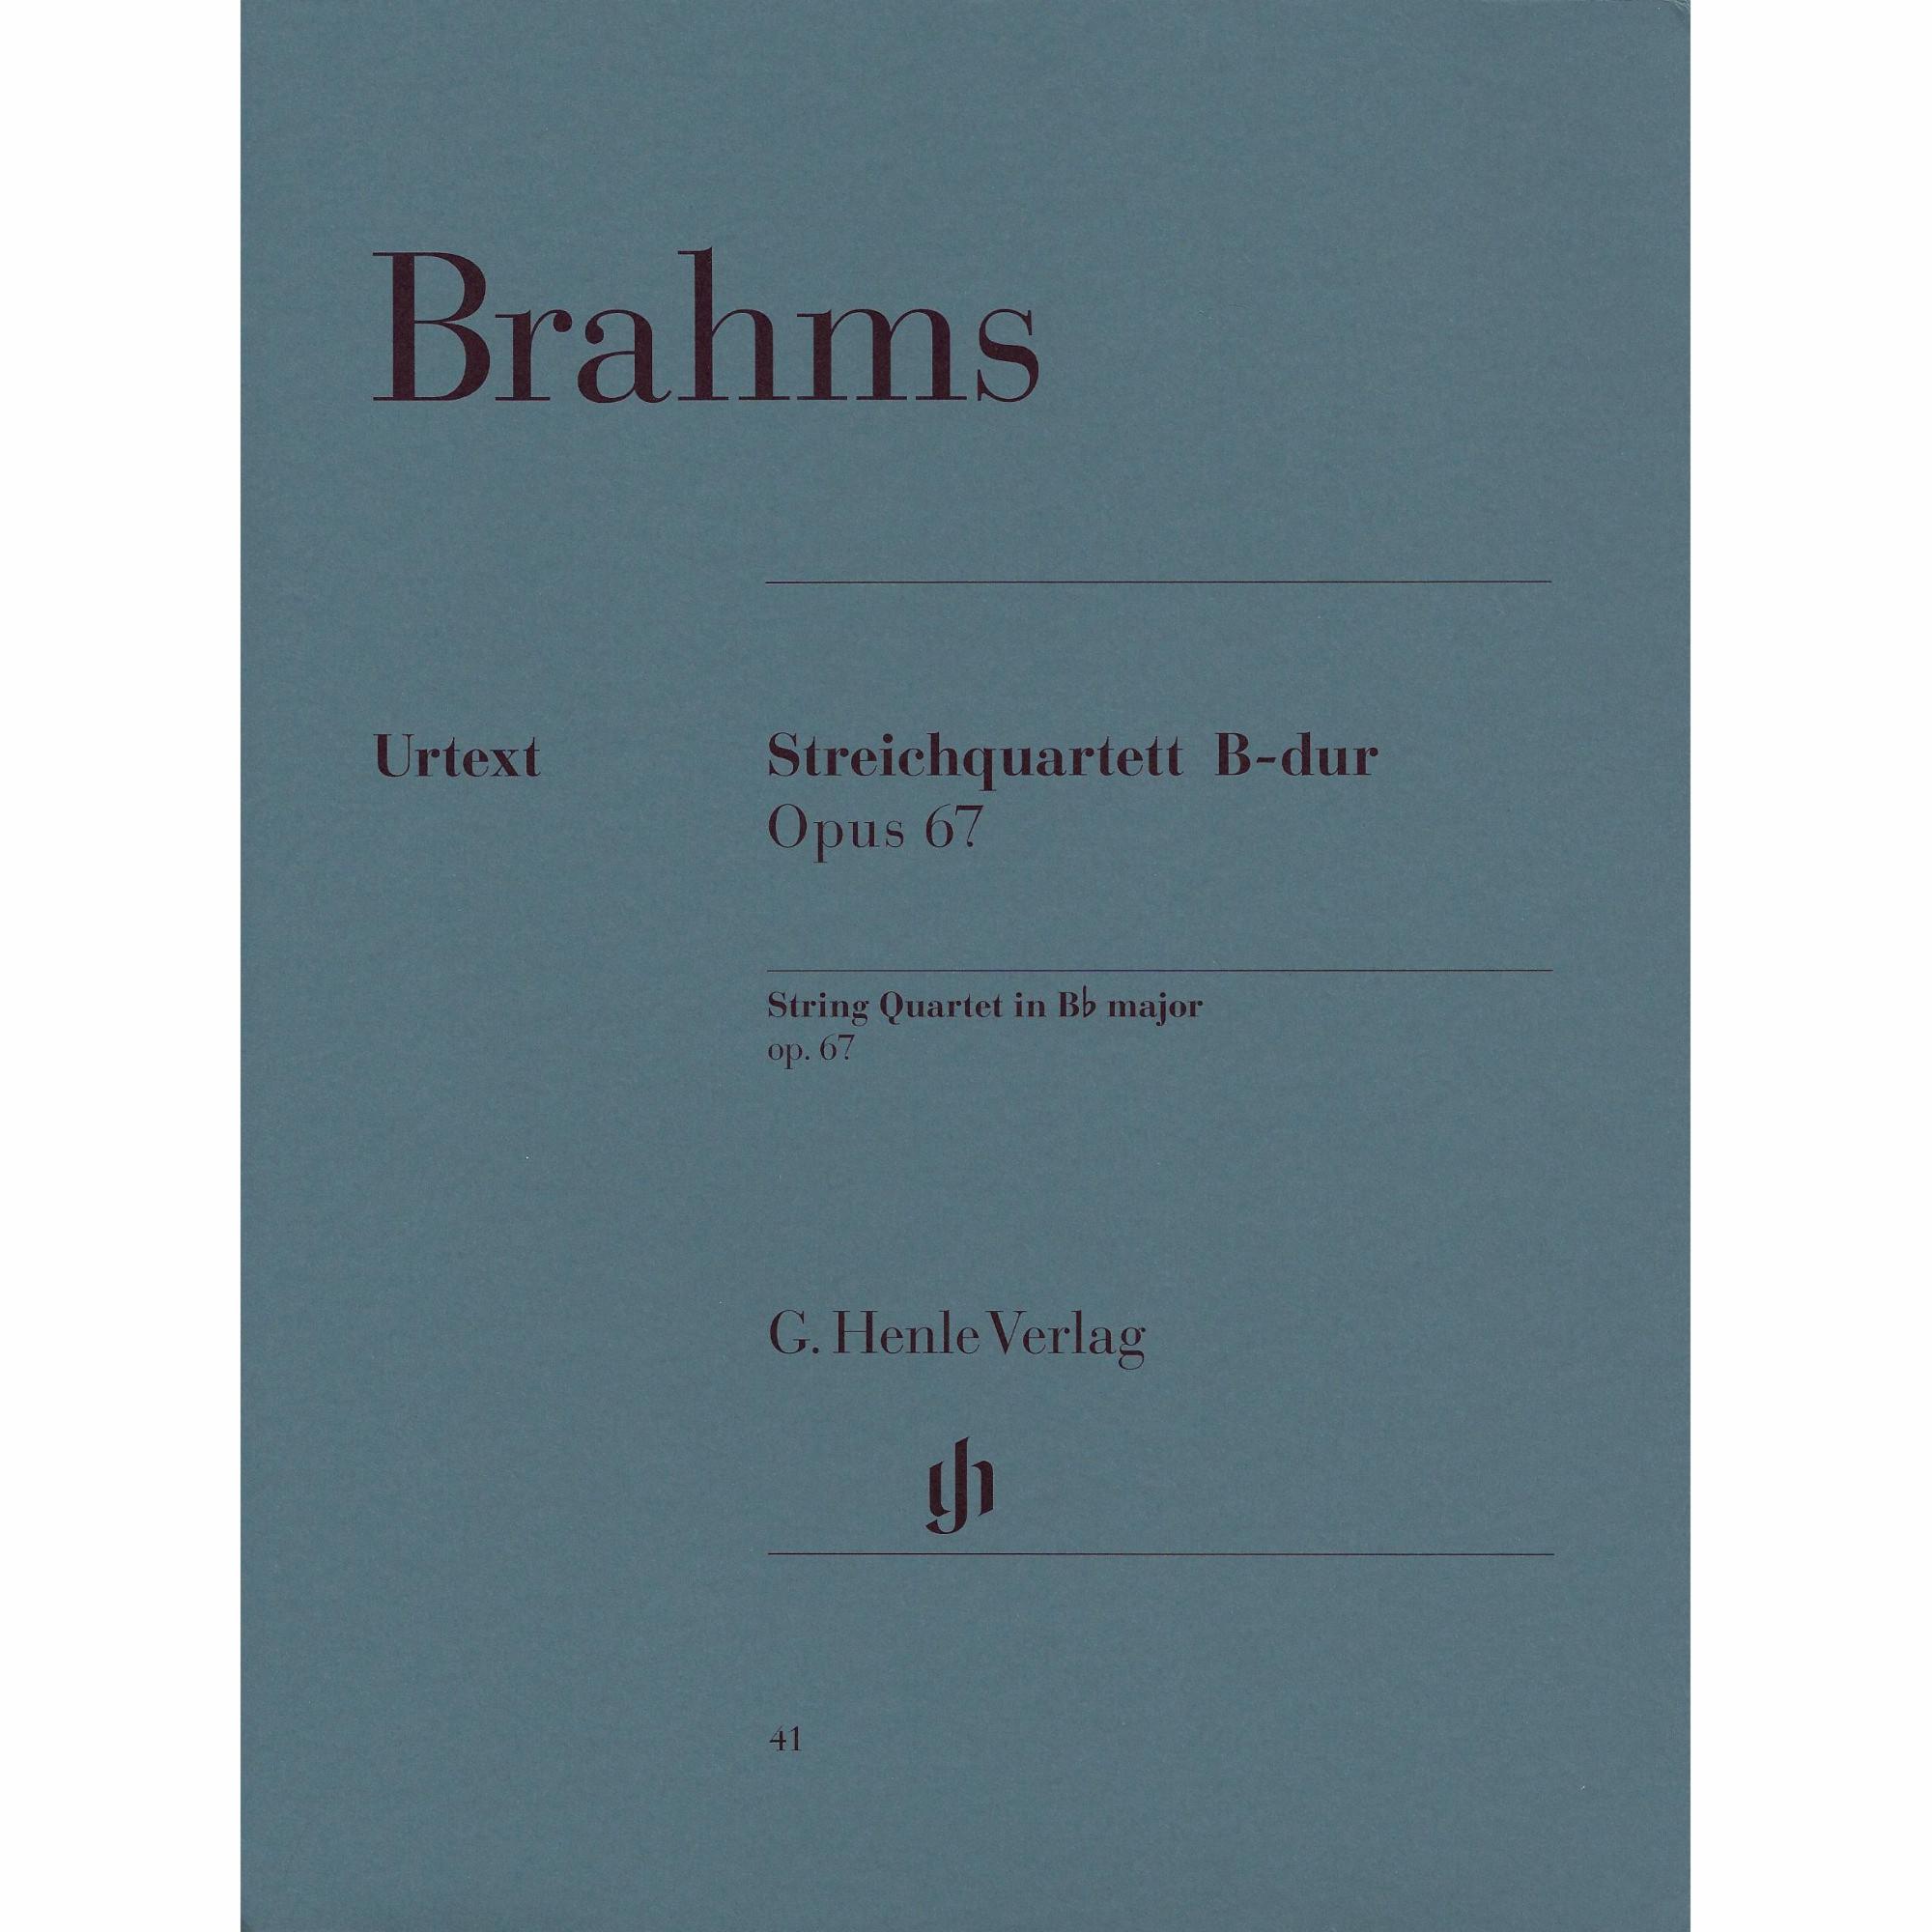 Brahms -- String Quartet in B-flat Major, Op. 67